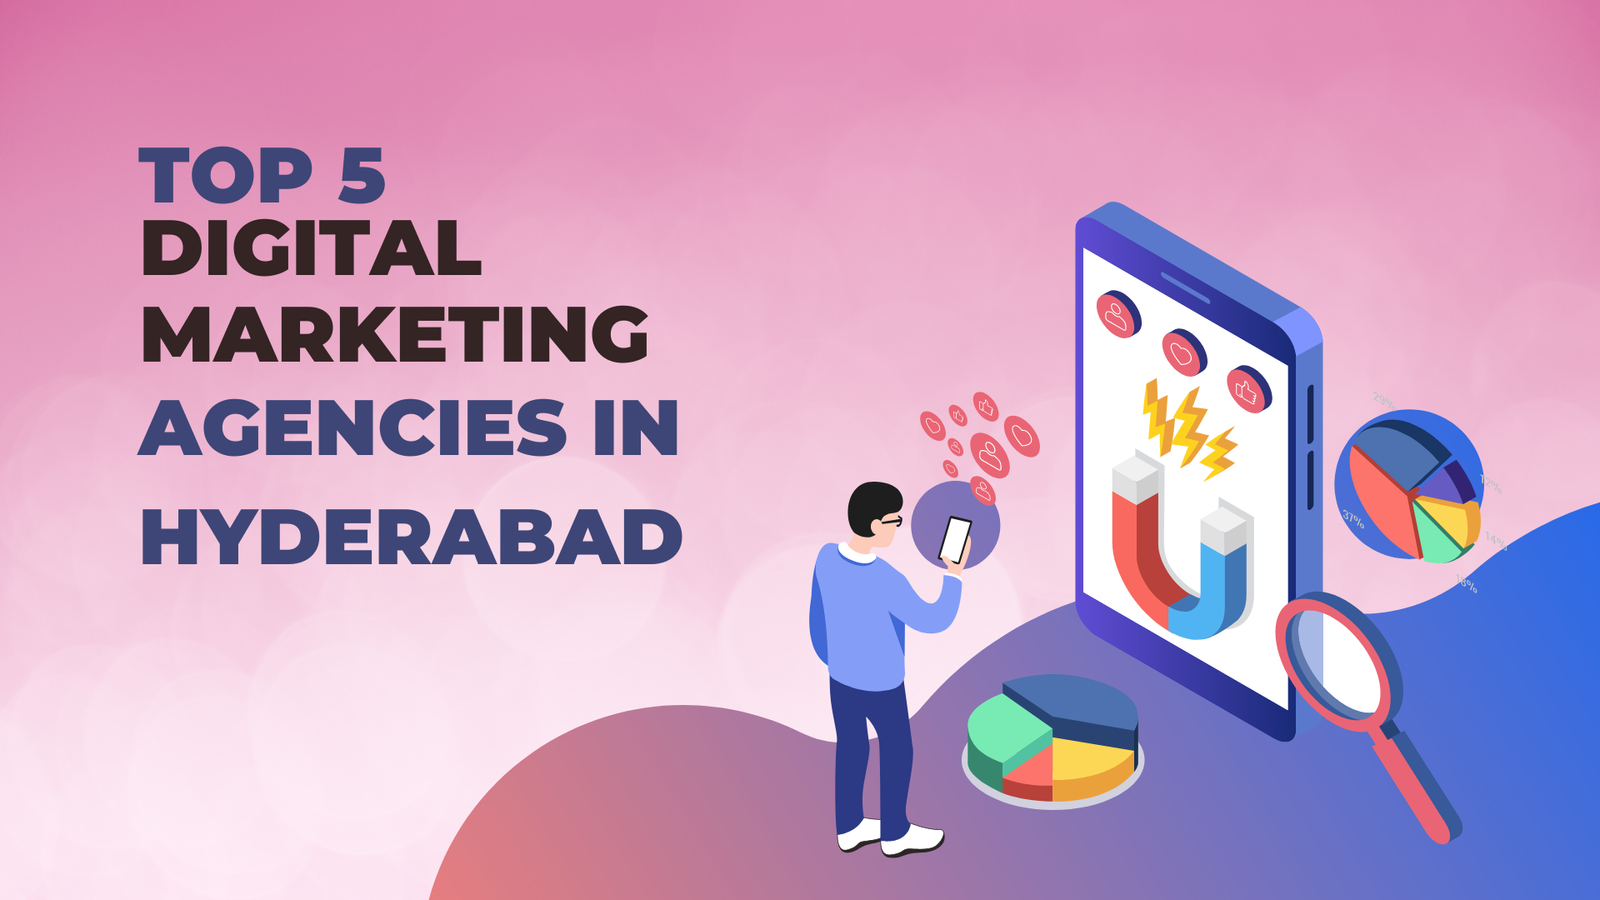 Top 5 Digital Marketing Agencies in Hyderabad